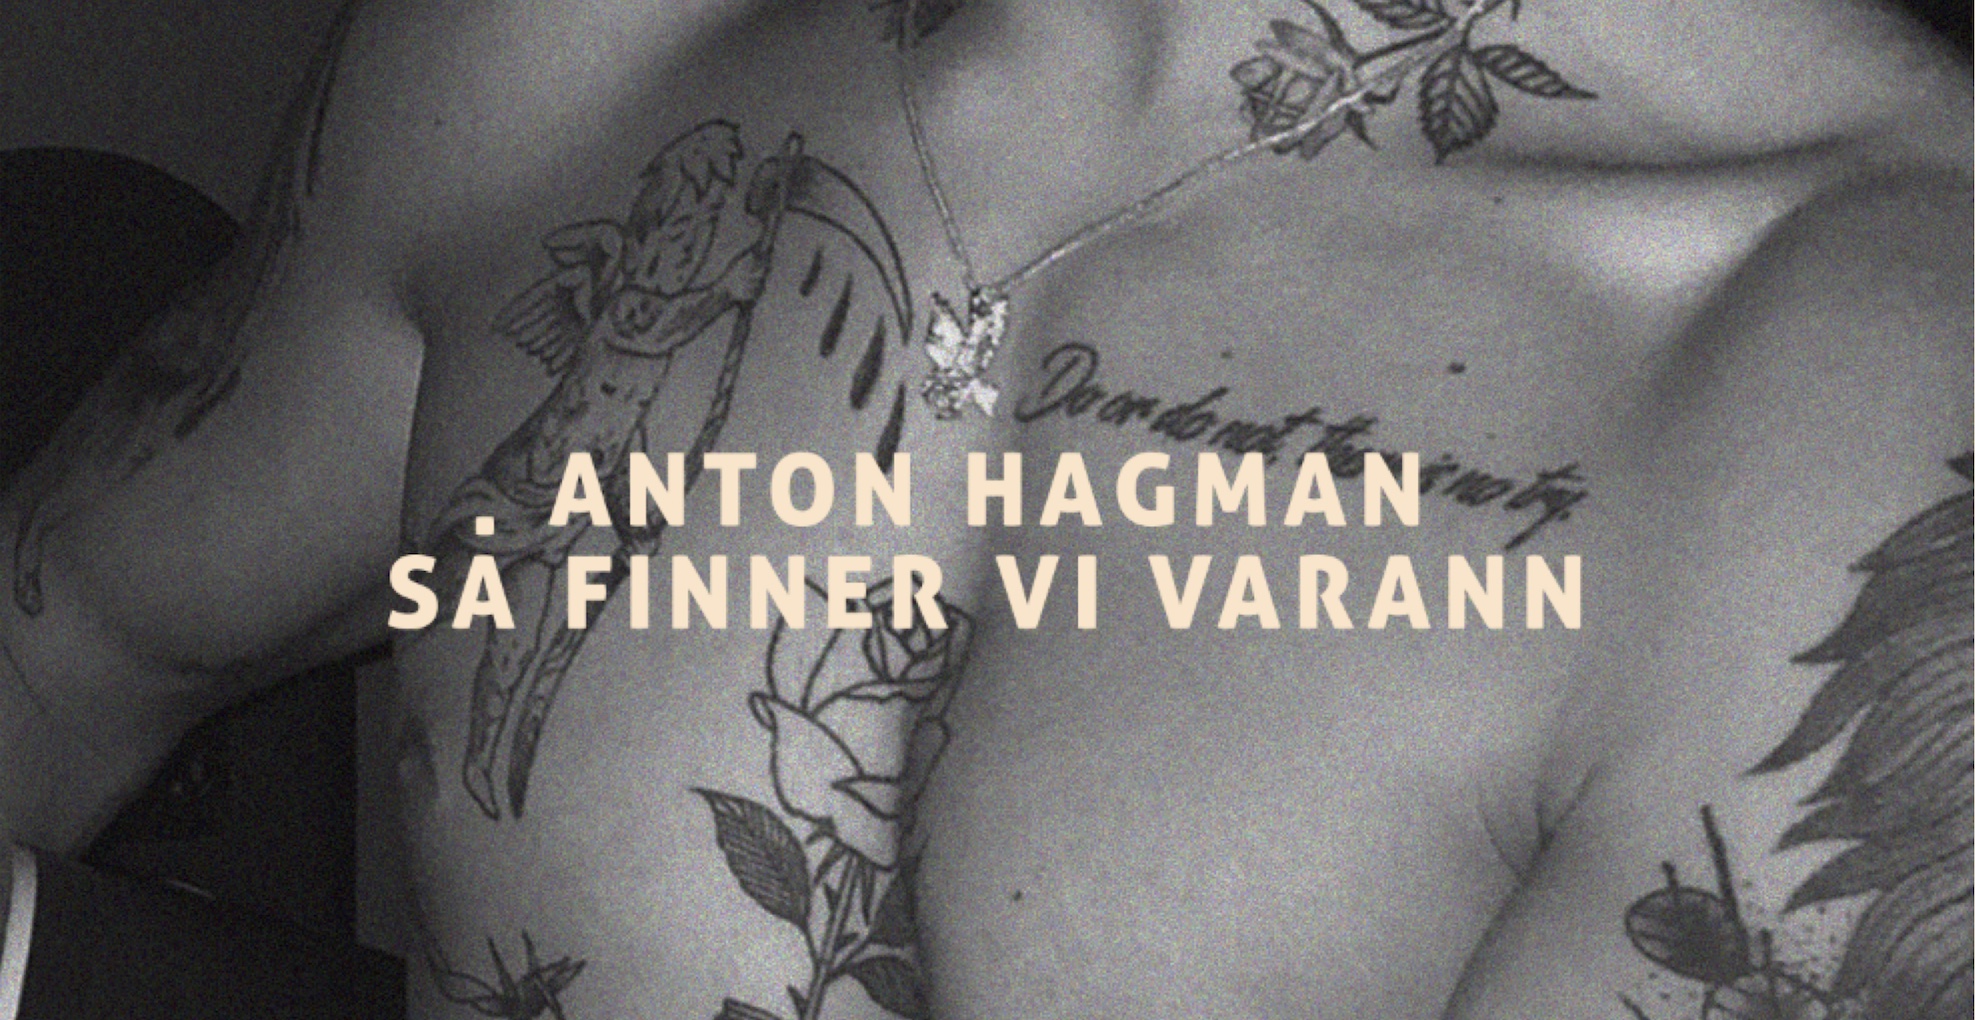 Anton Hagman släpper nya låten ”Så finner vi varann”!